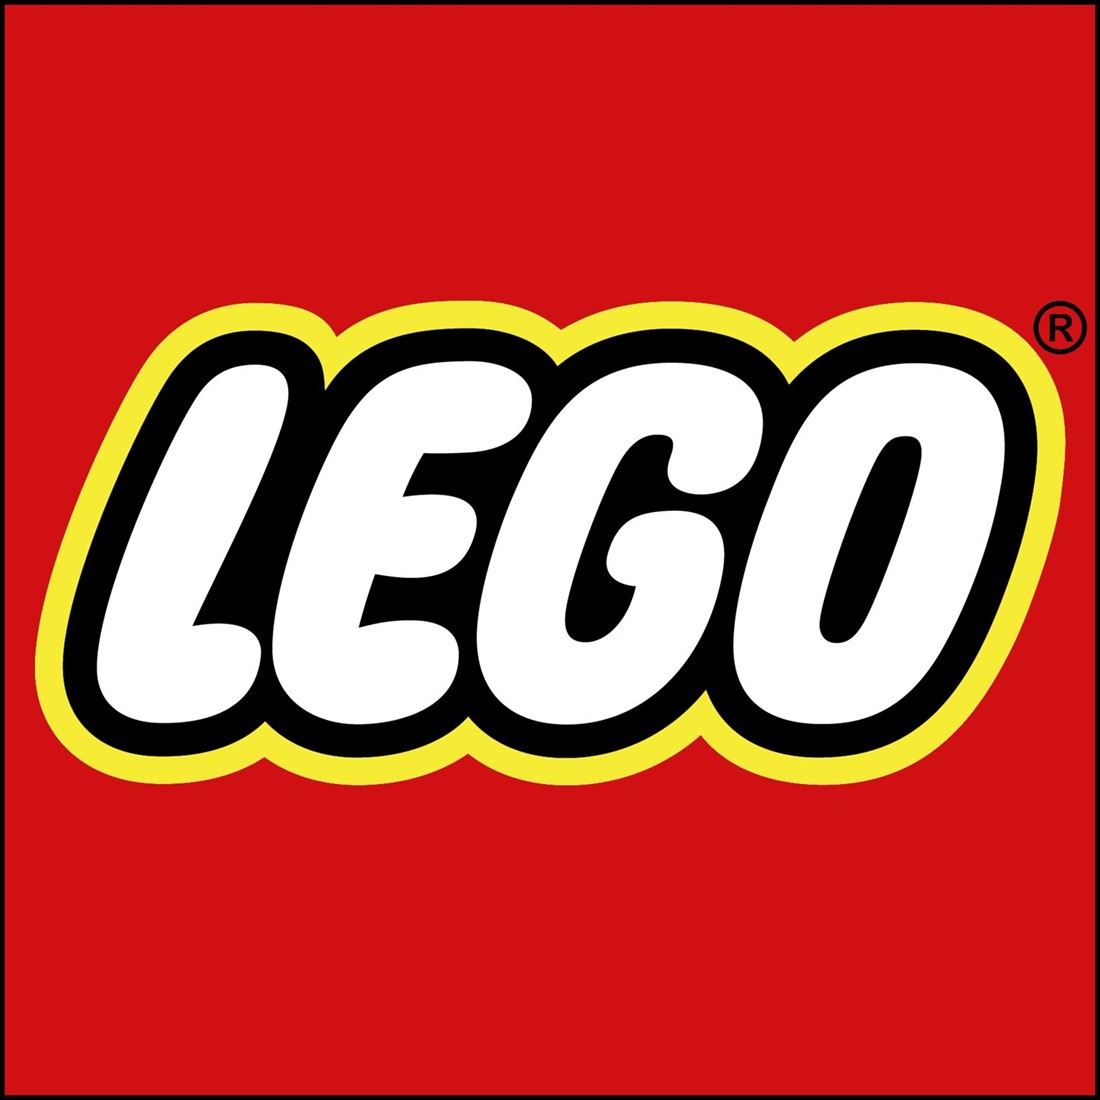 41951 - LEGO® DOTS - Tableau à messages